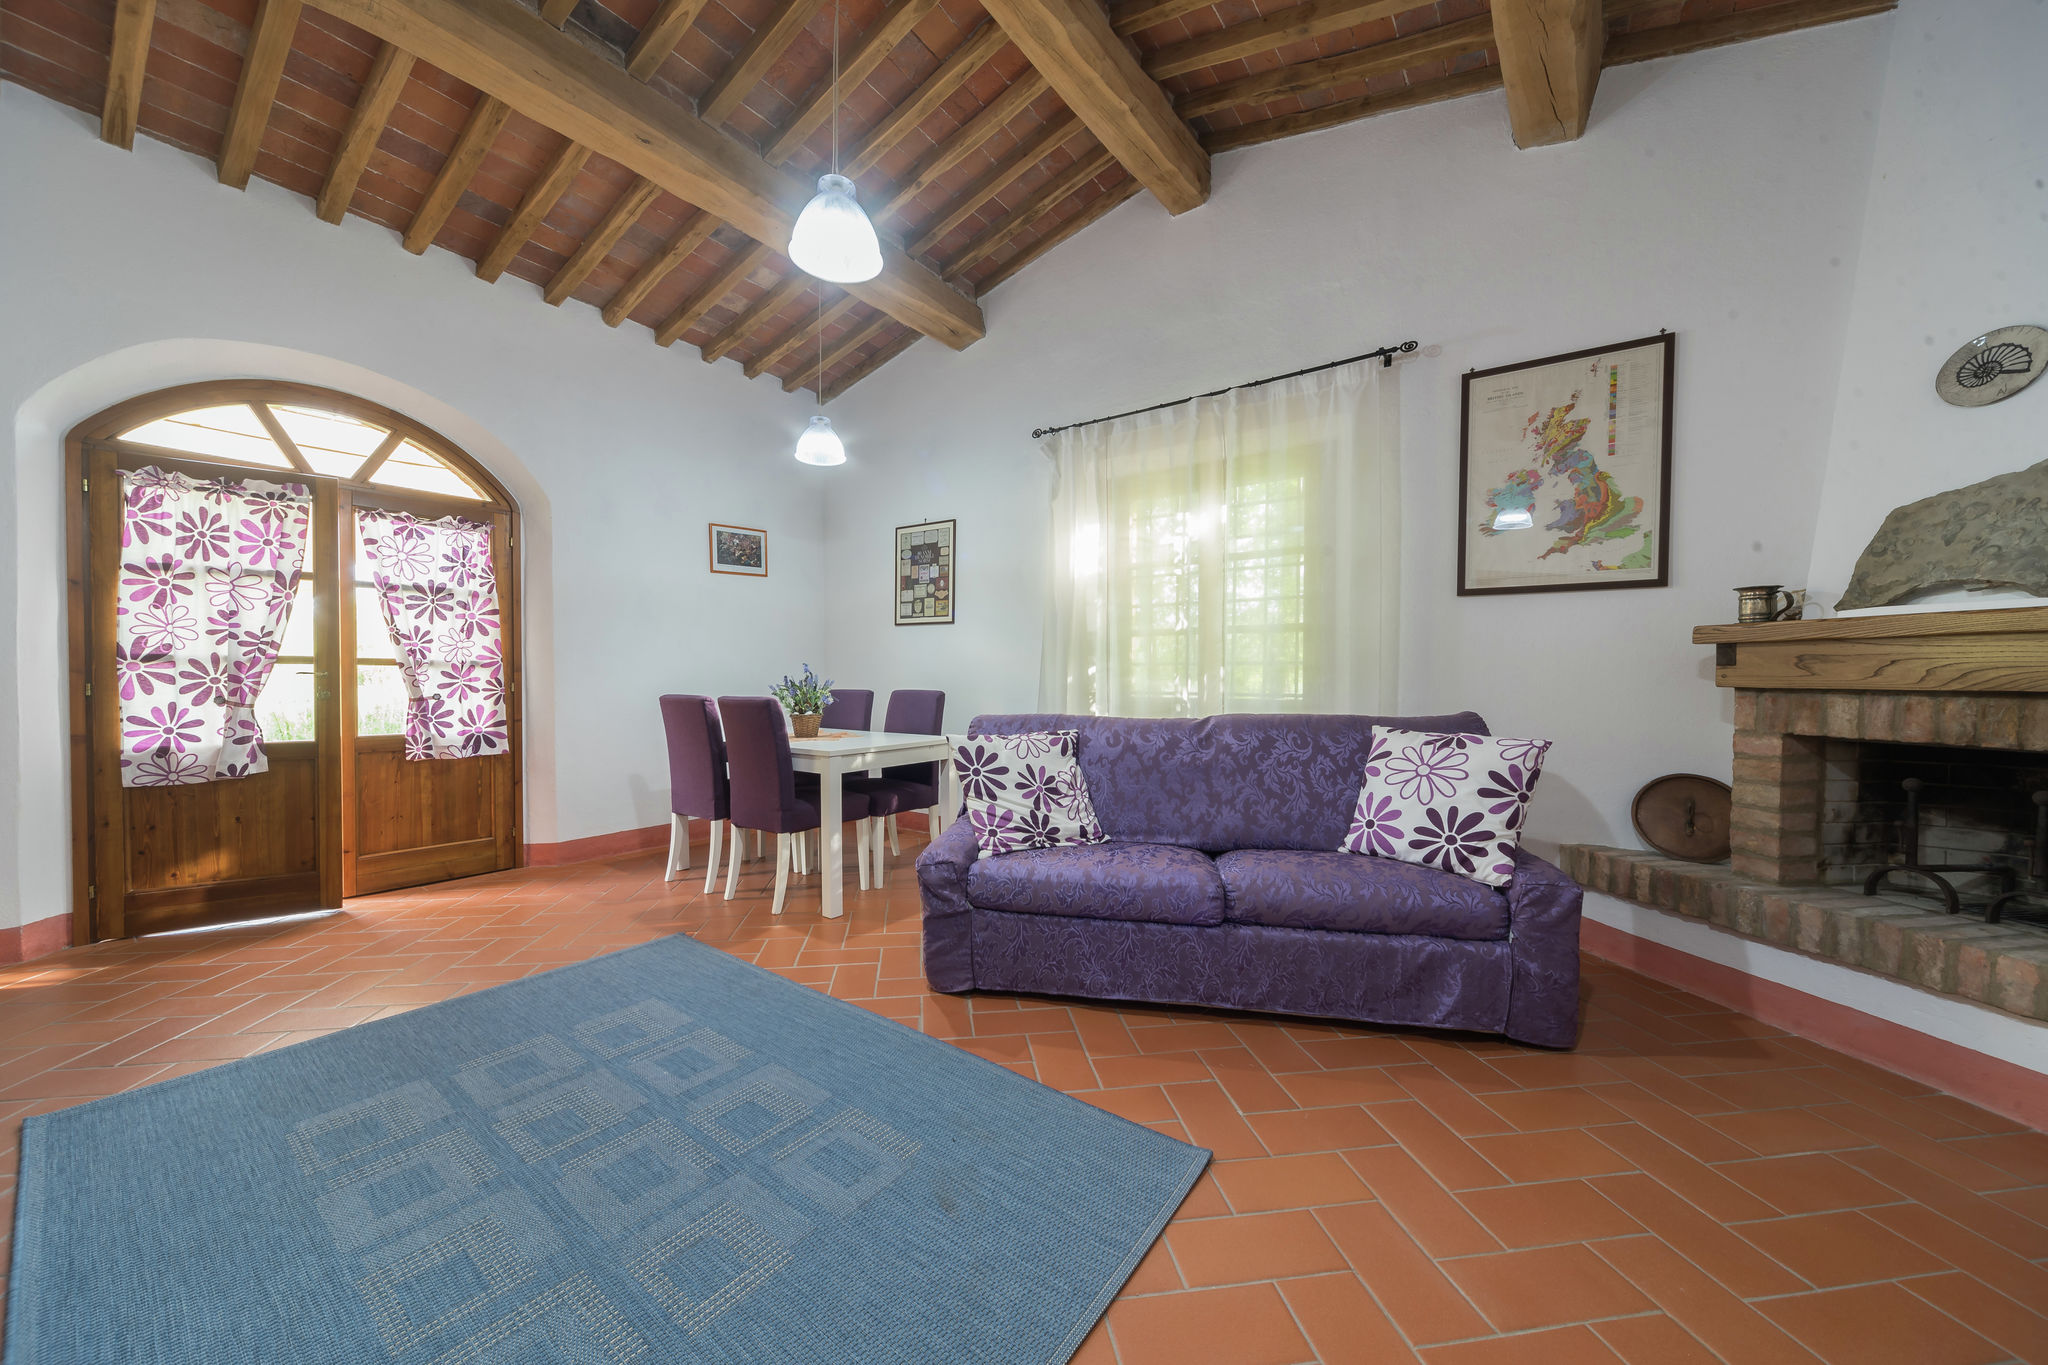 Maison de vacances typique à Rosignano Marittimo avec jardin